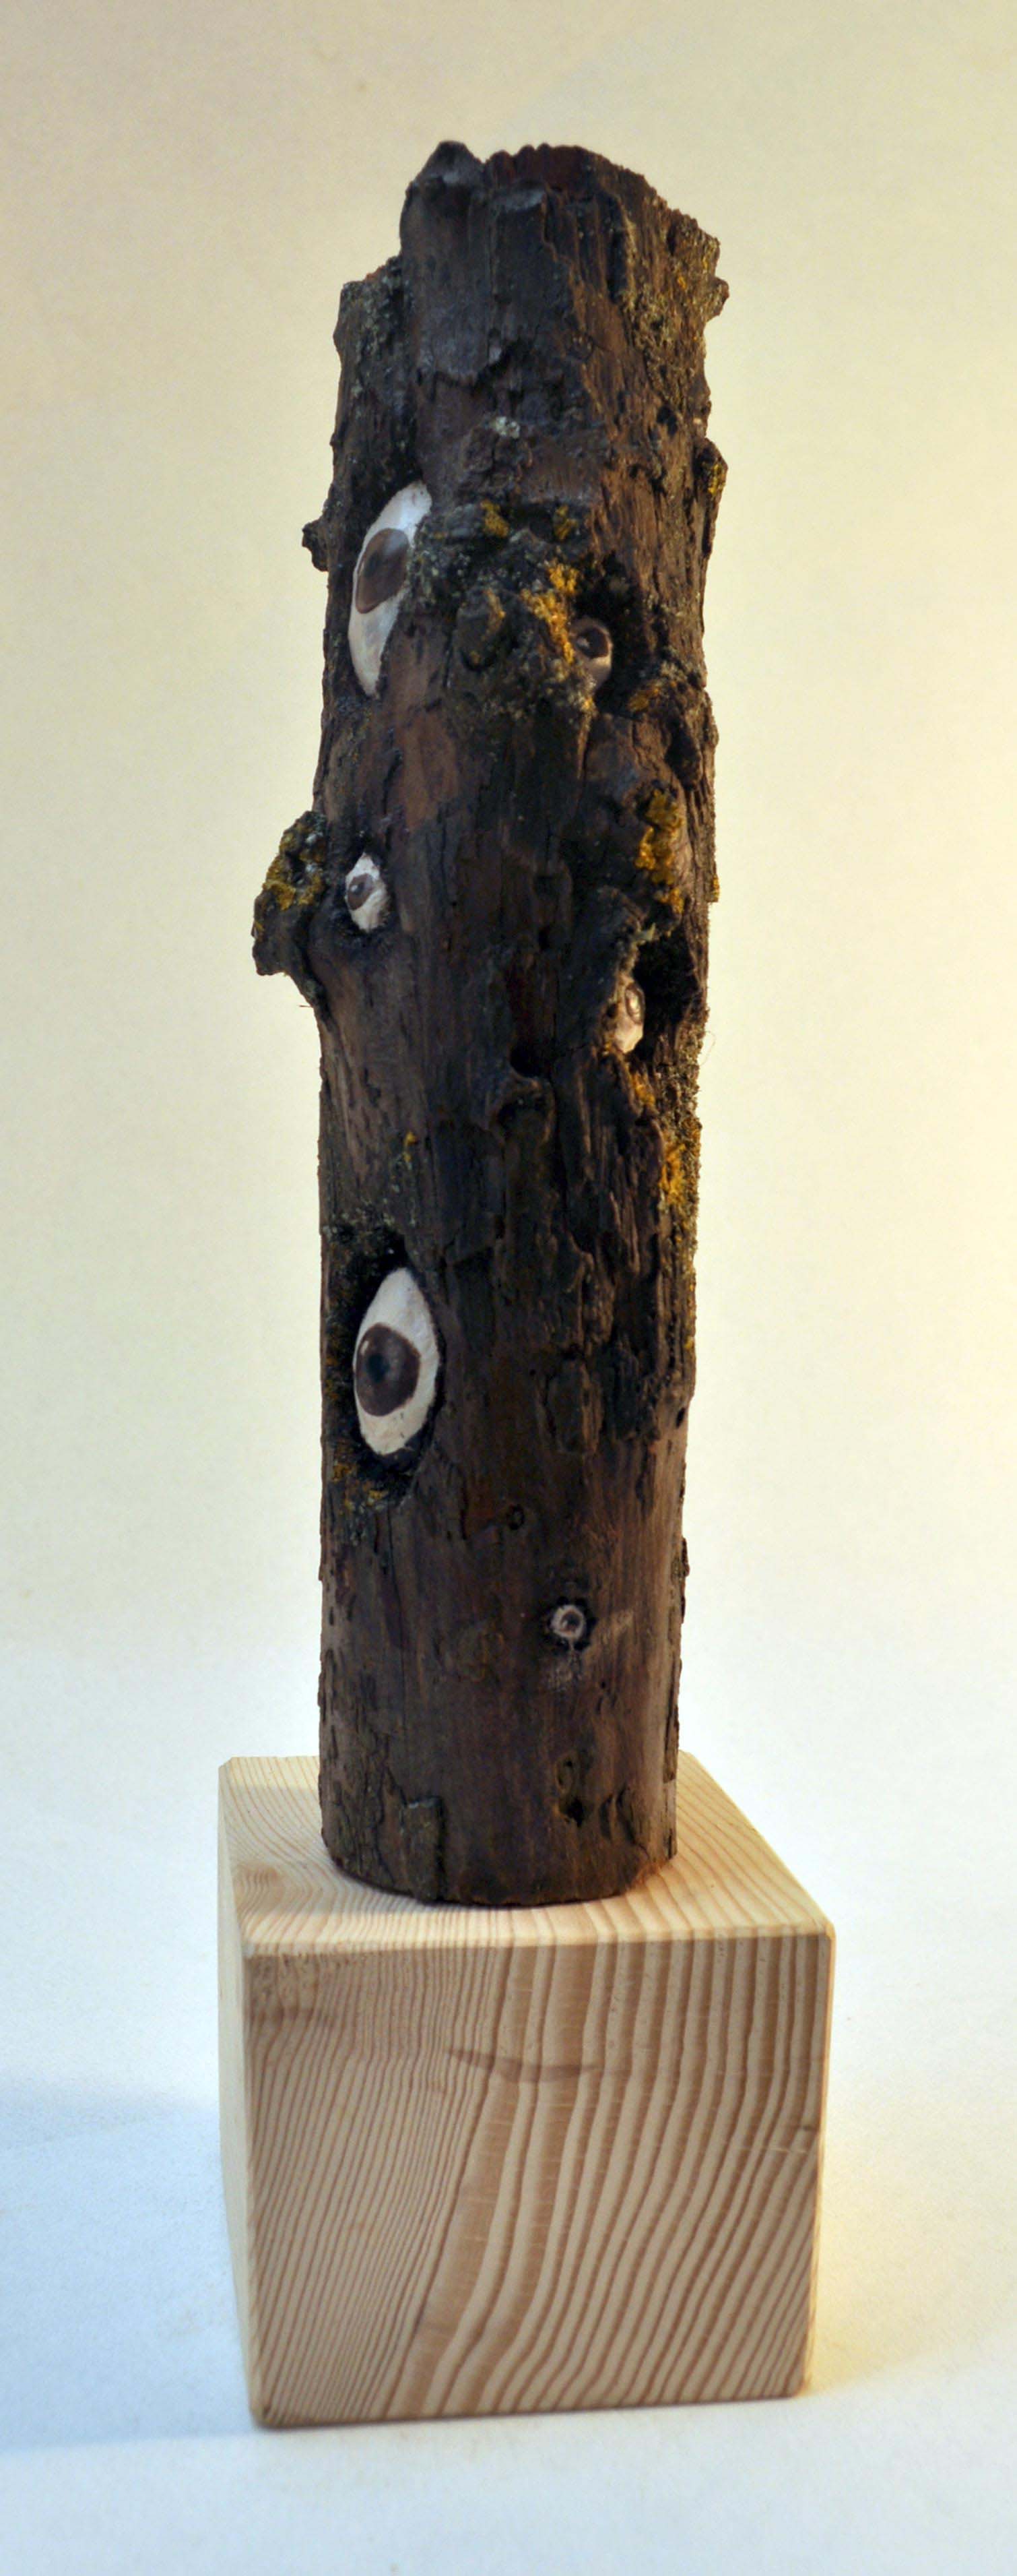 Un morceau d'arbre, deux petites branches tronquées. Dans les trous du bois, des yeux regardent au-dehors.